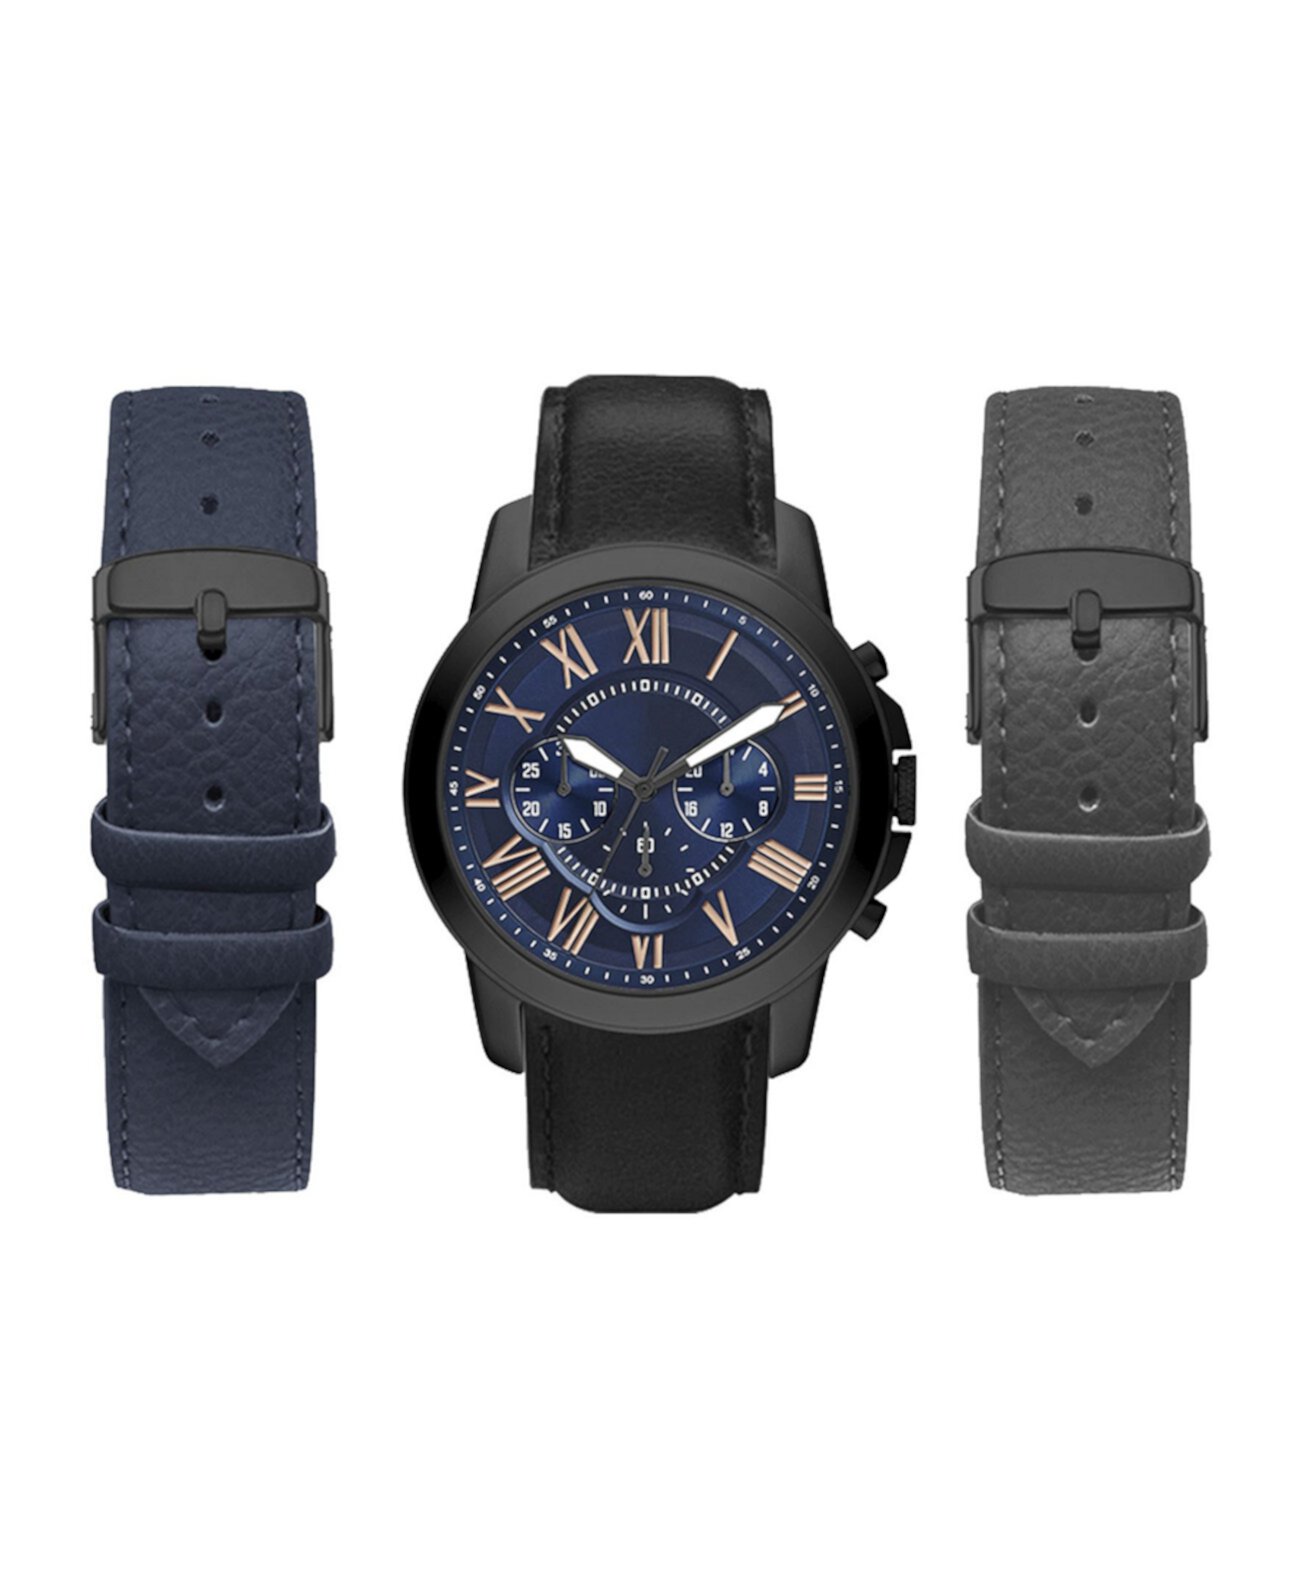 Мужские аналоговые часы с черным ремешком 44 мм с черным, серым и темно-синим сменными ремешками American Exchange